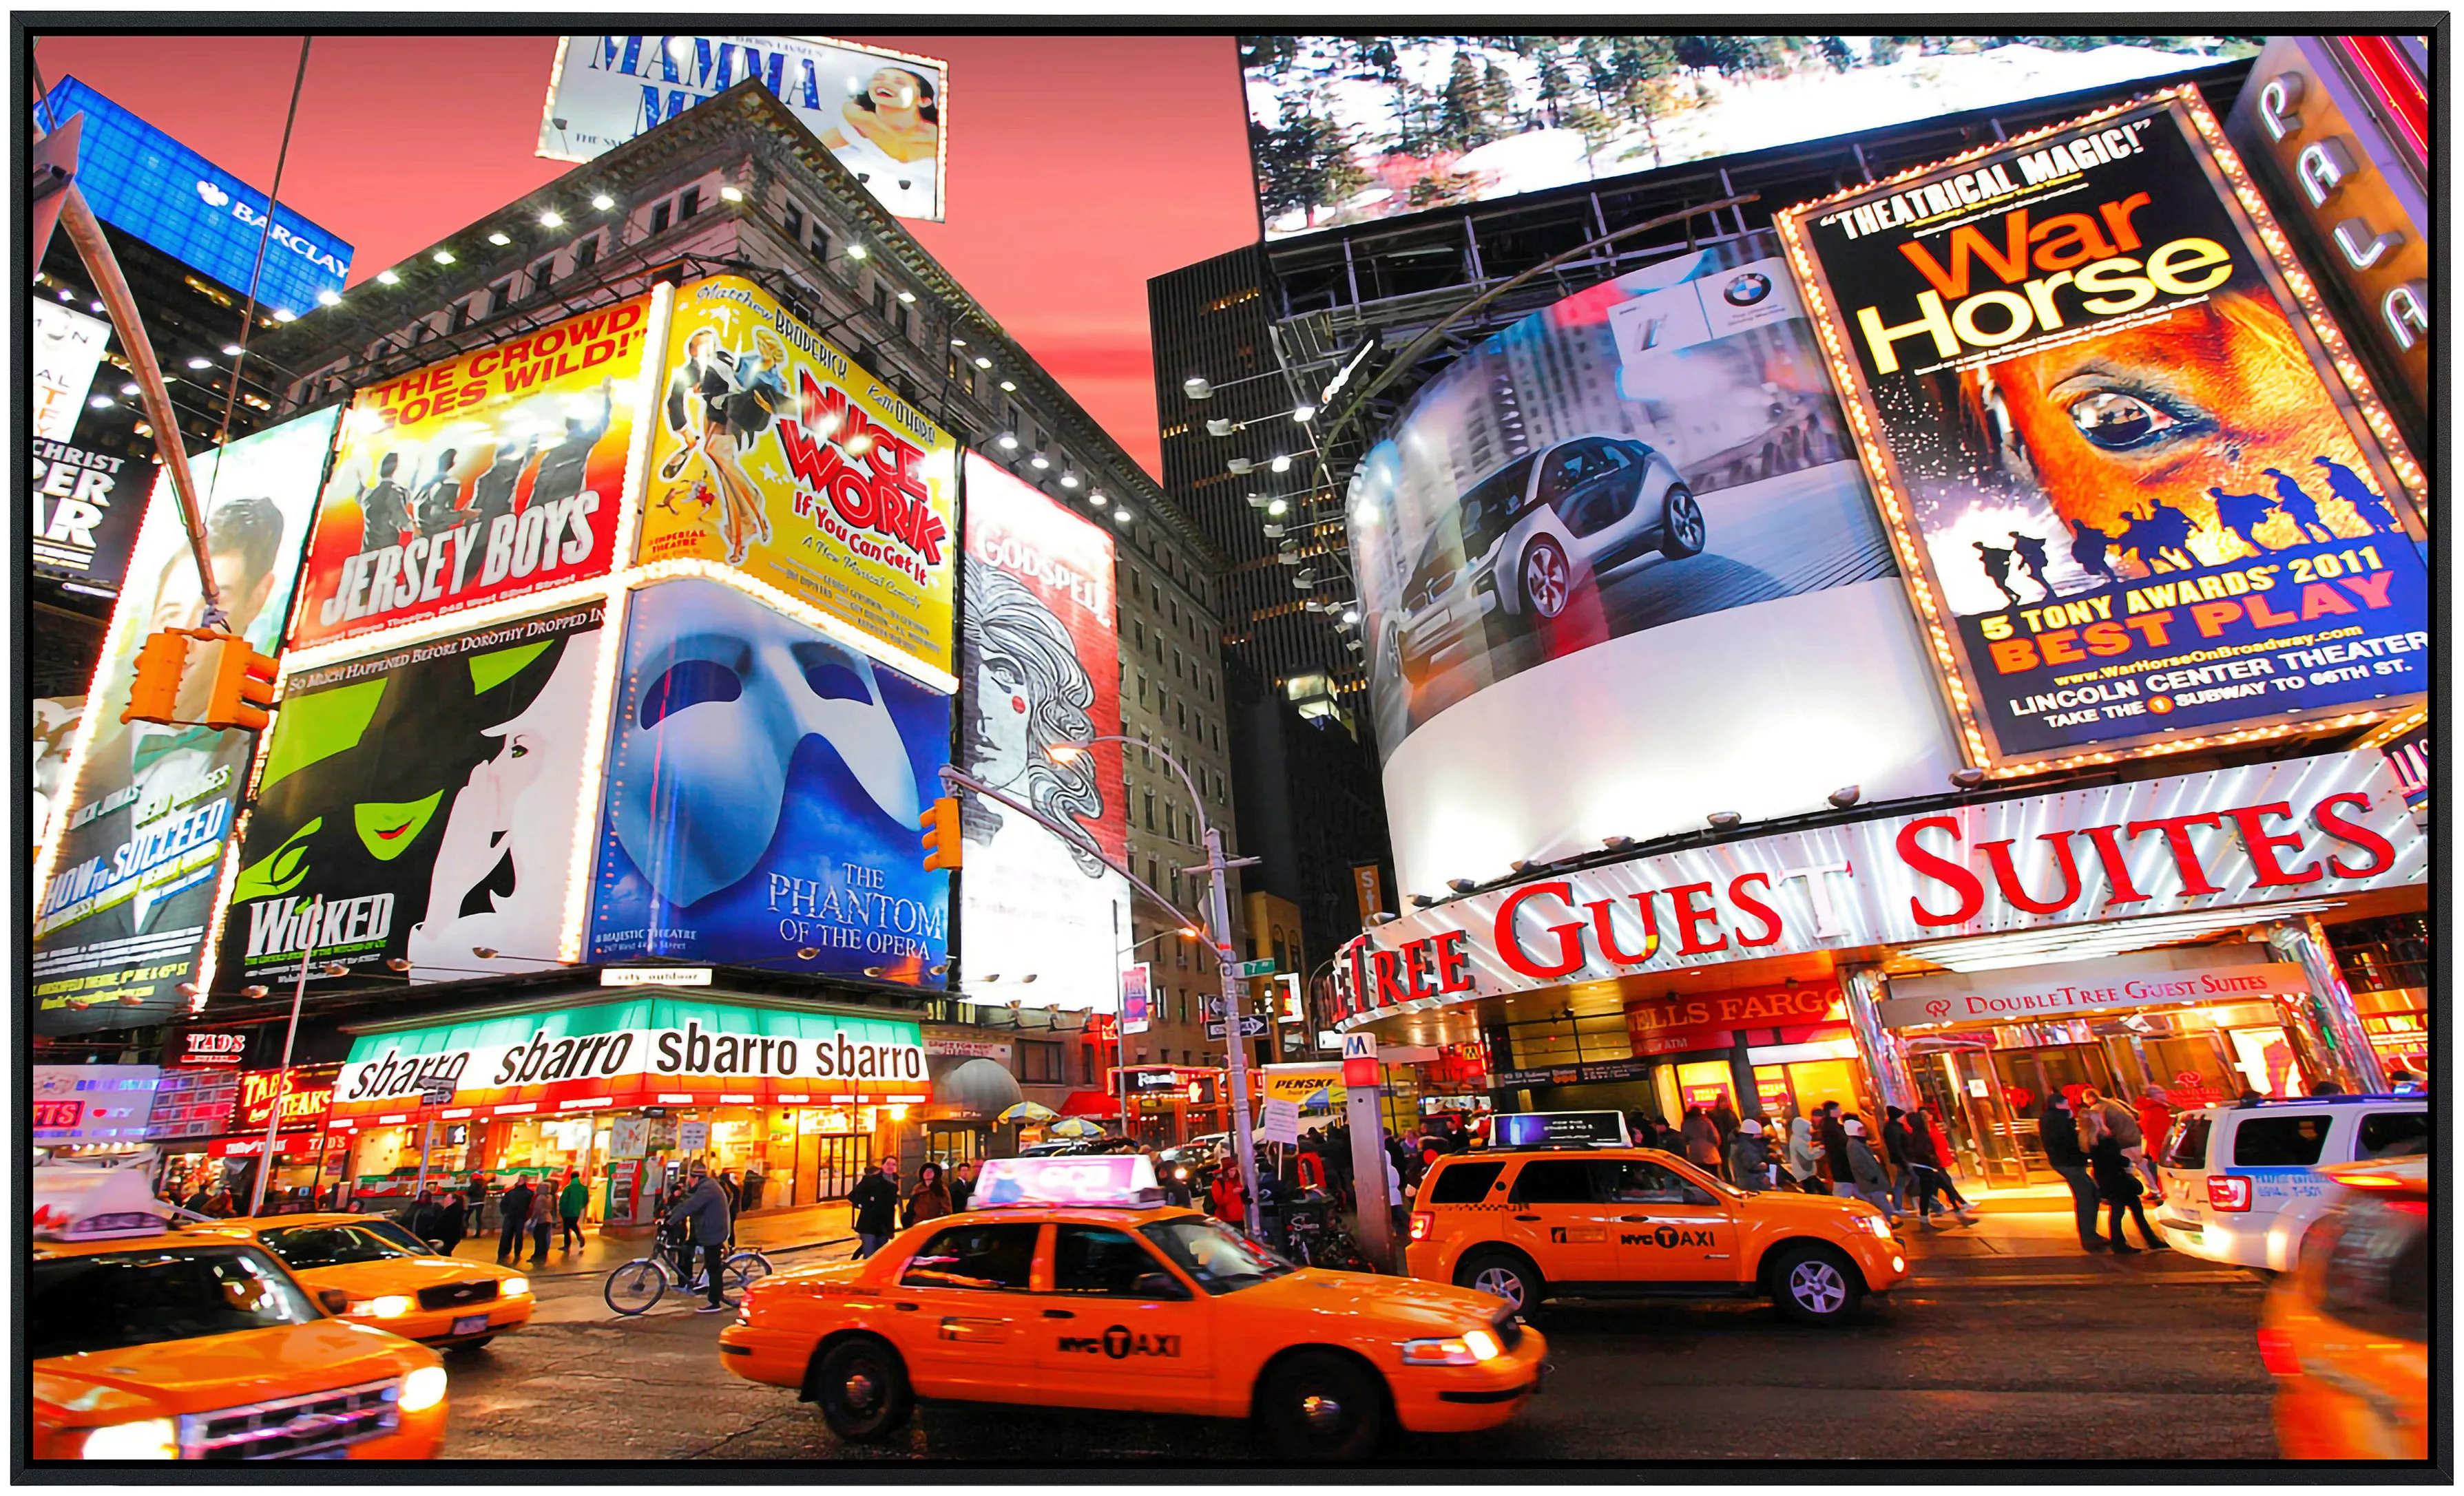 Papermoon Infrarotheizung »Time Square« günstig online kaufen